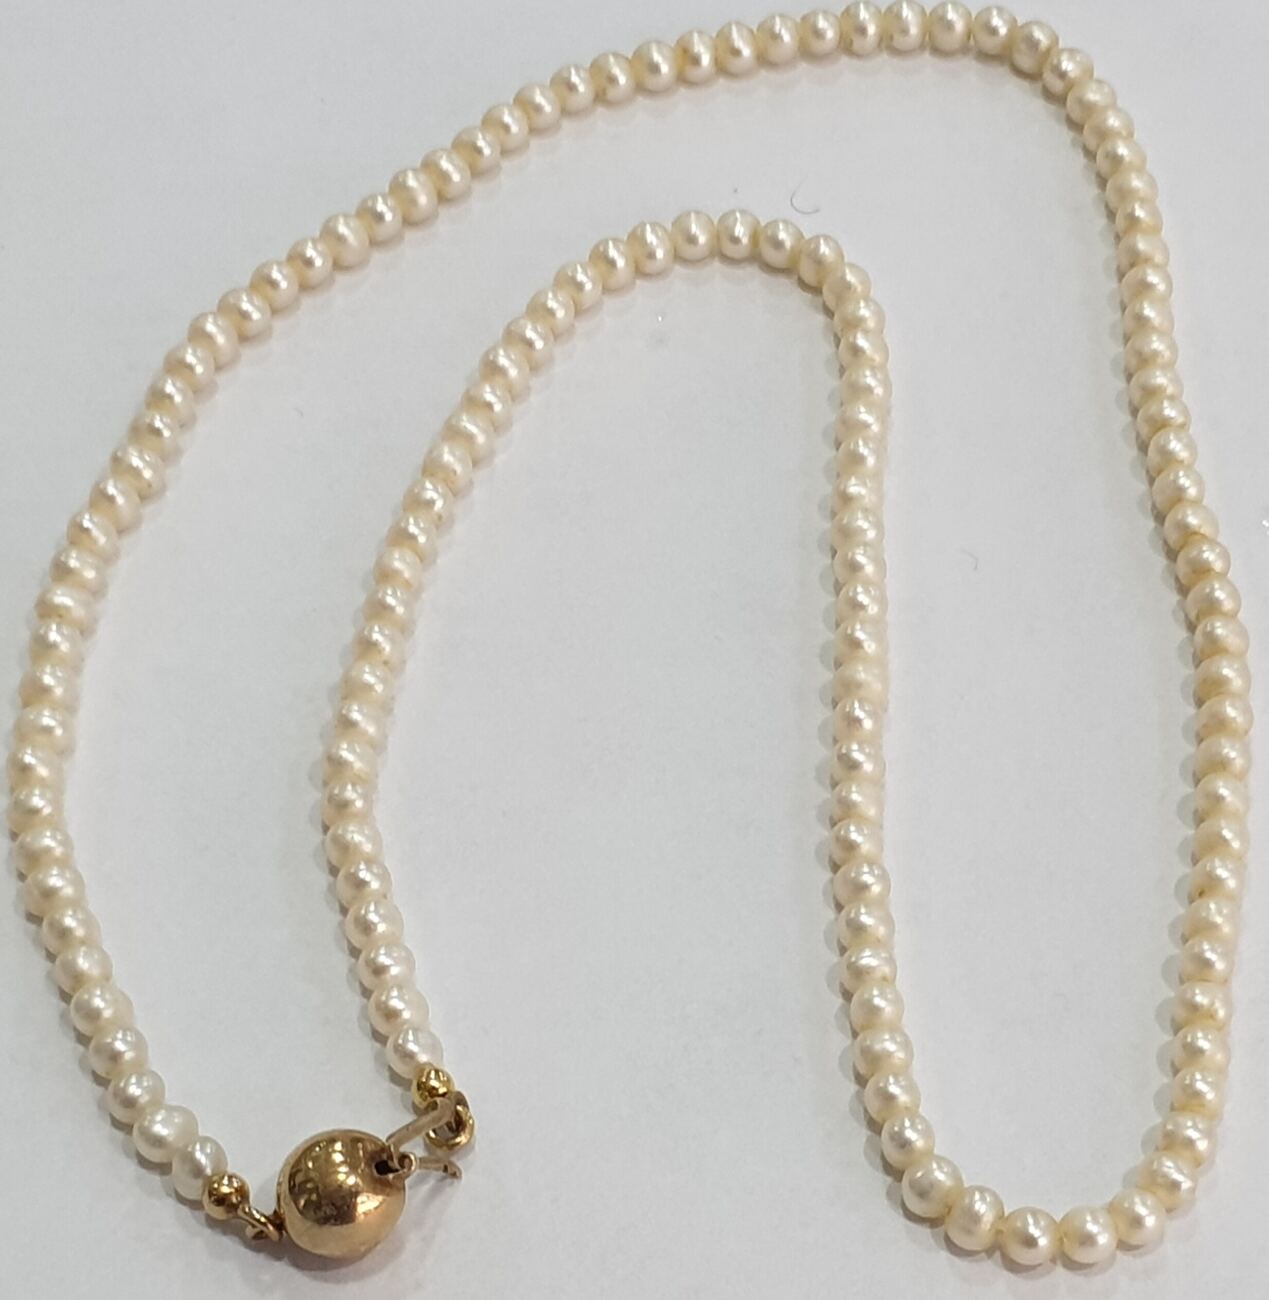 mit Perlenkete, Süßwasserperlen Feine Perlenschmuck | 375er Gebrauchsspuren normalen MA-Shops Gold Verschluß, Perlencollier